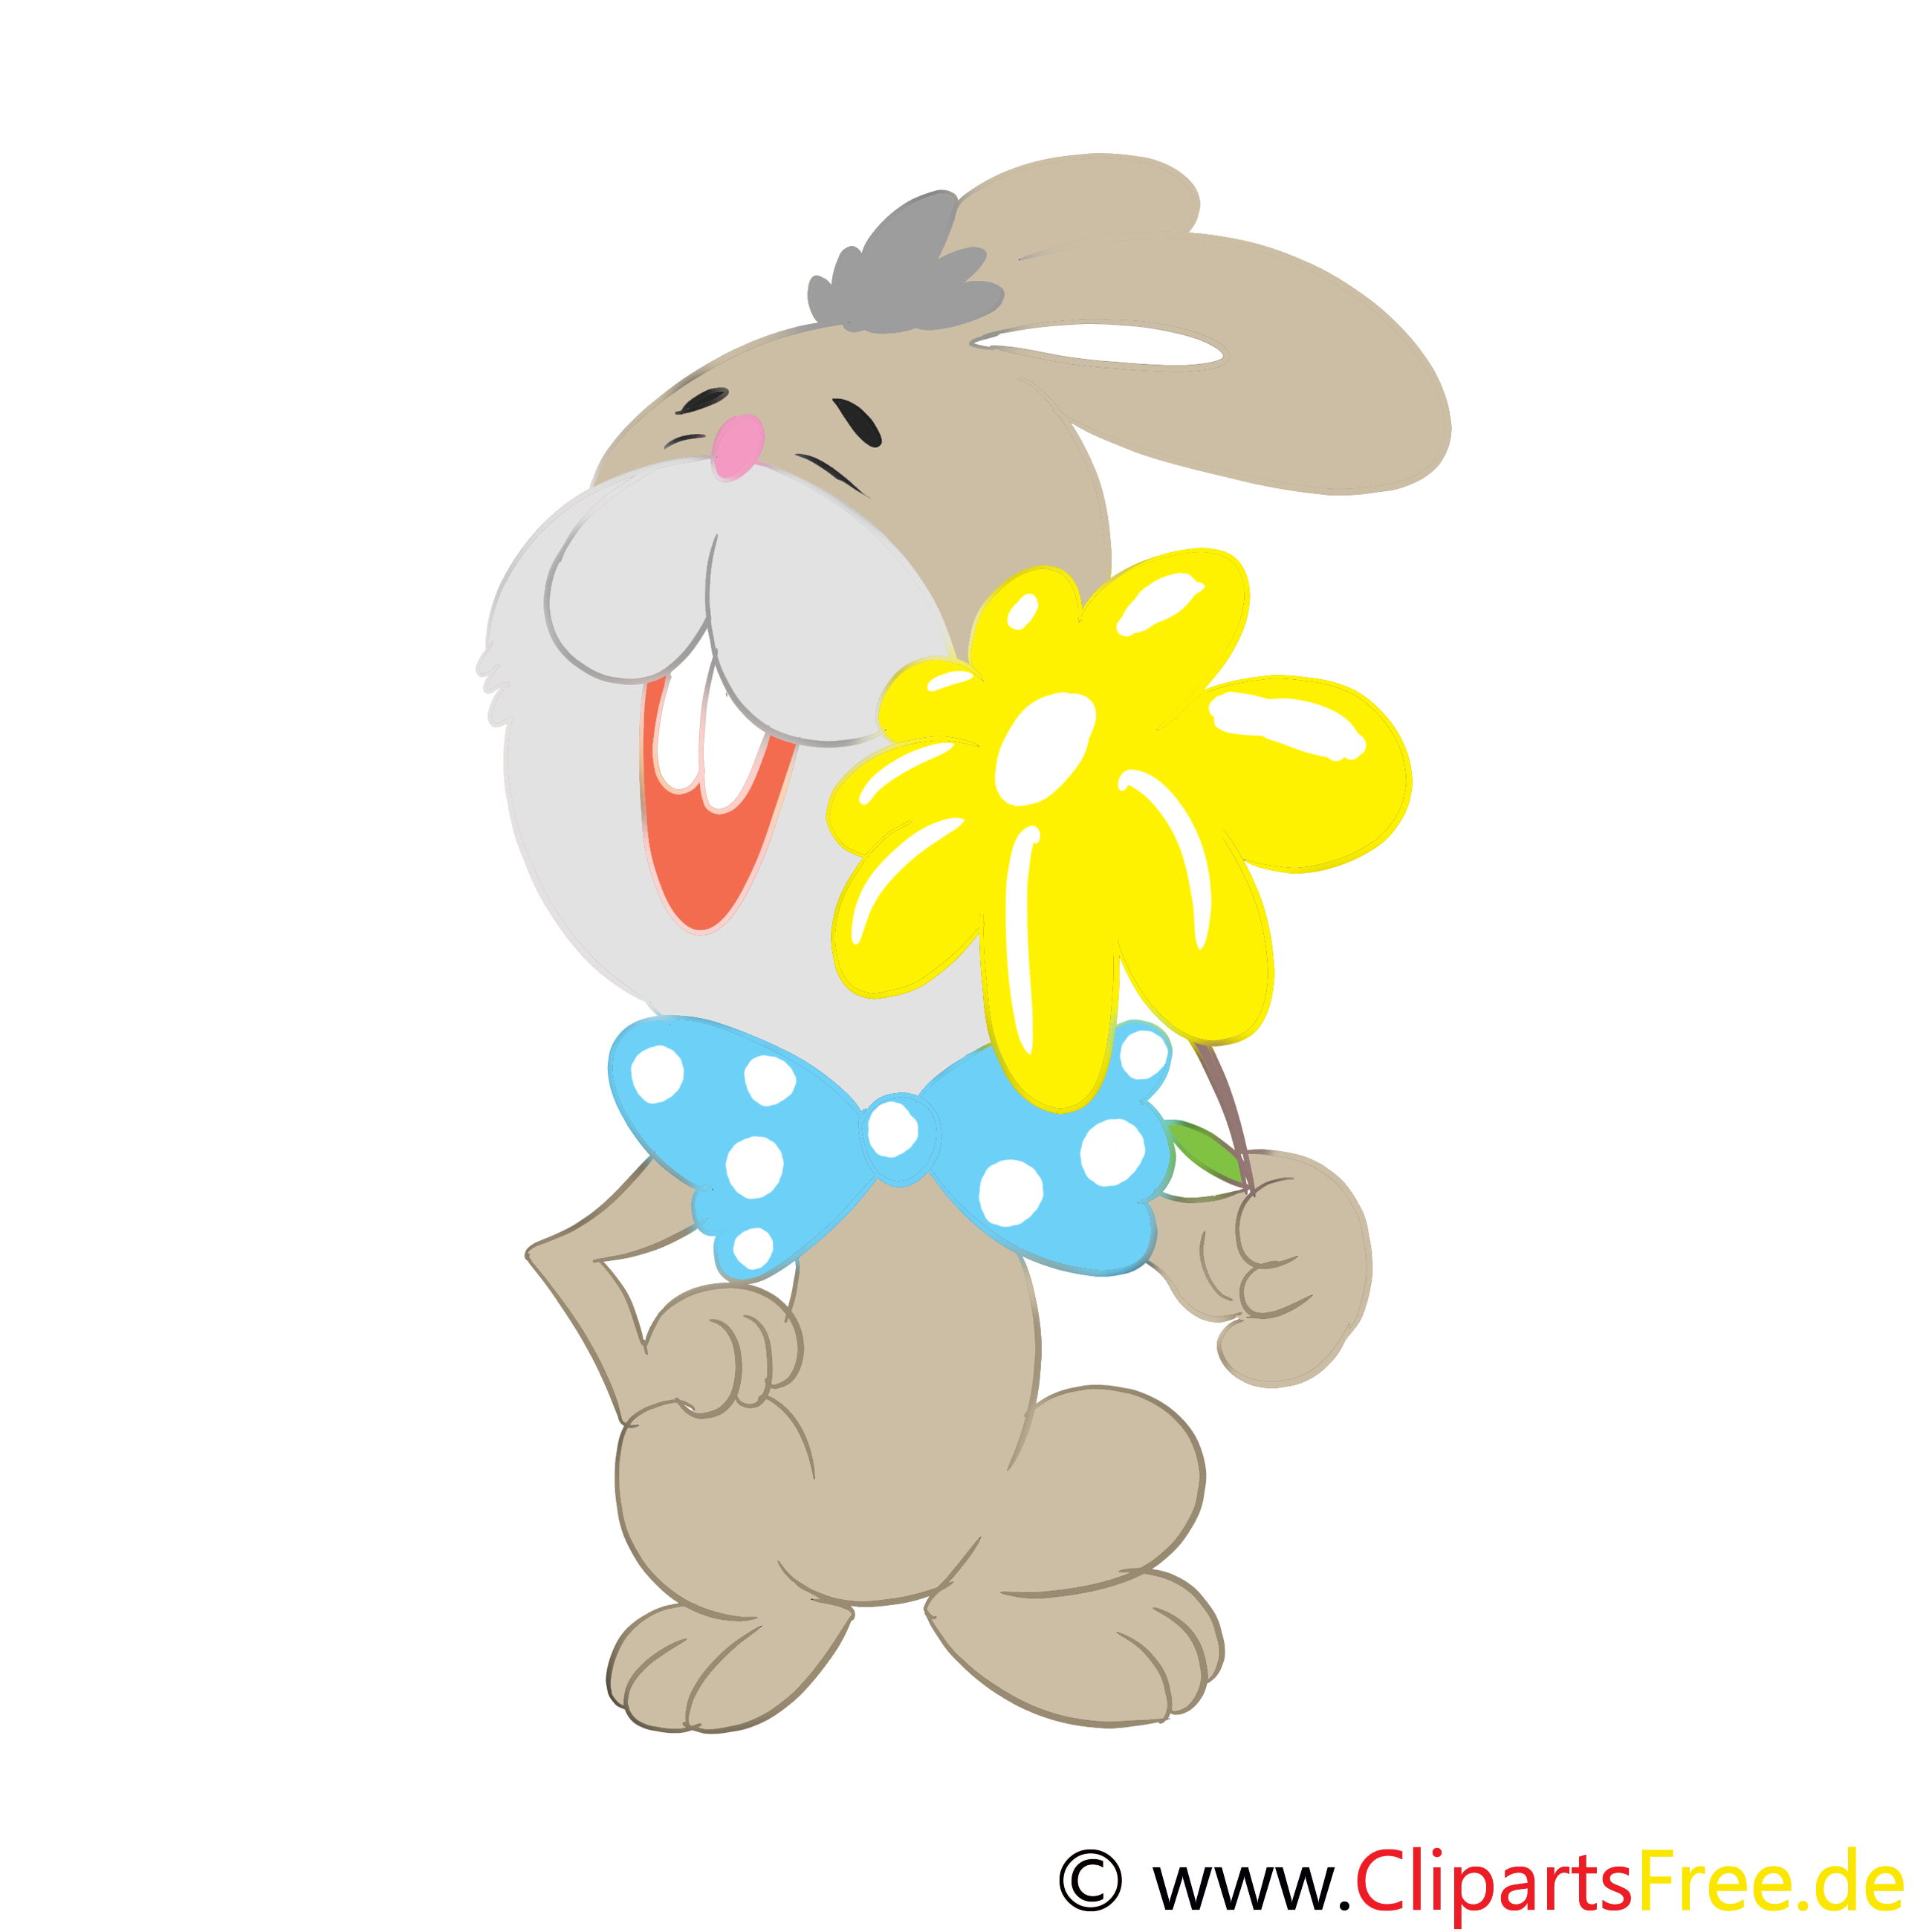 Fleur lapin cliparts gratuis - Pâques images